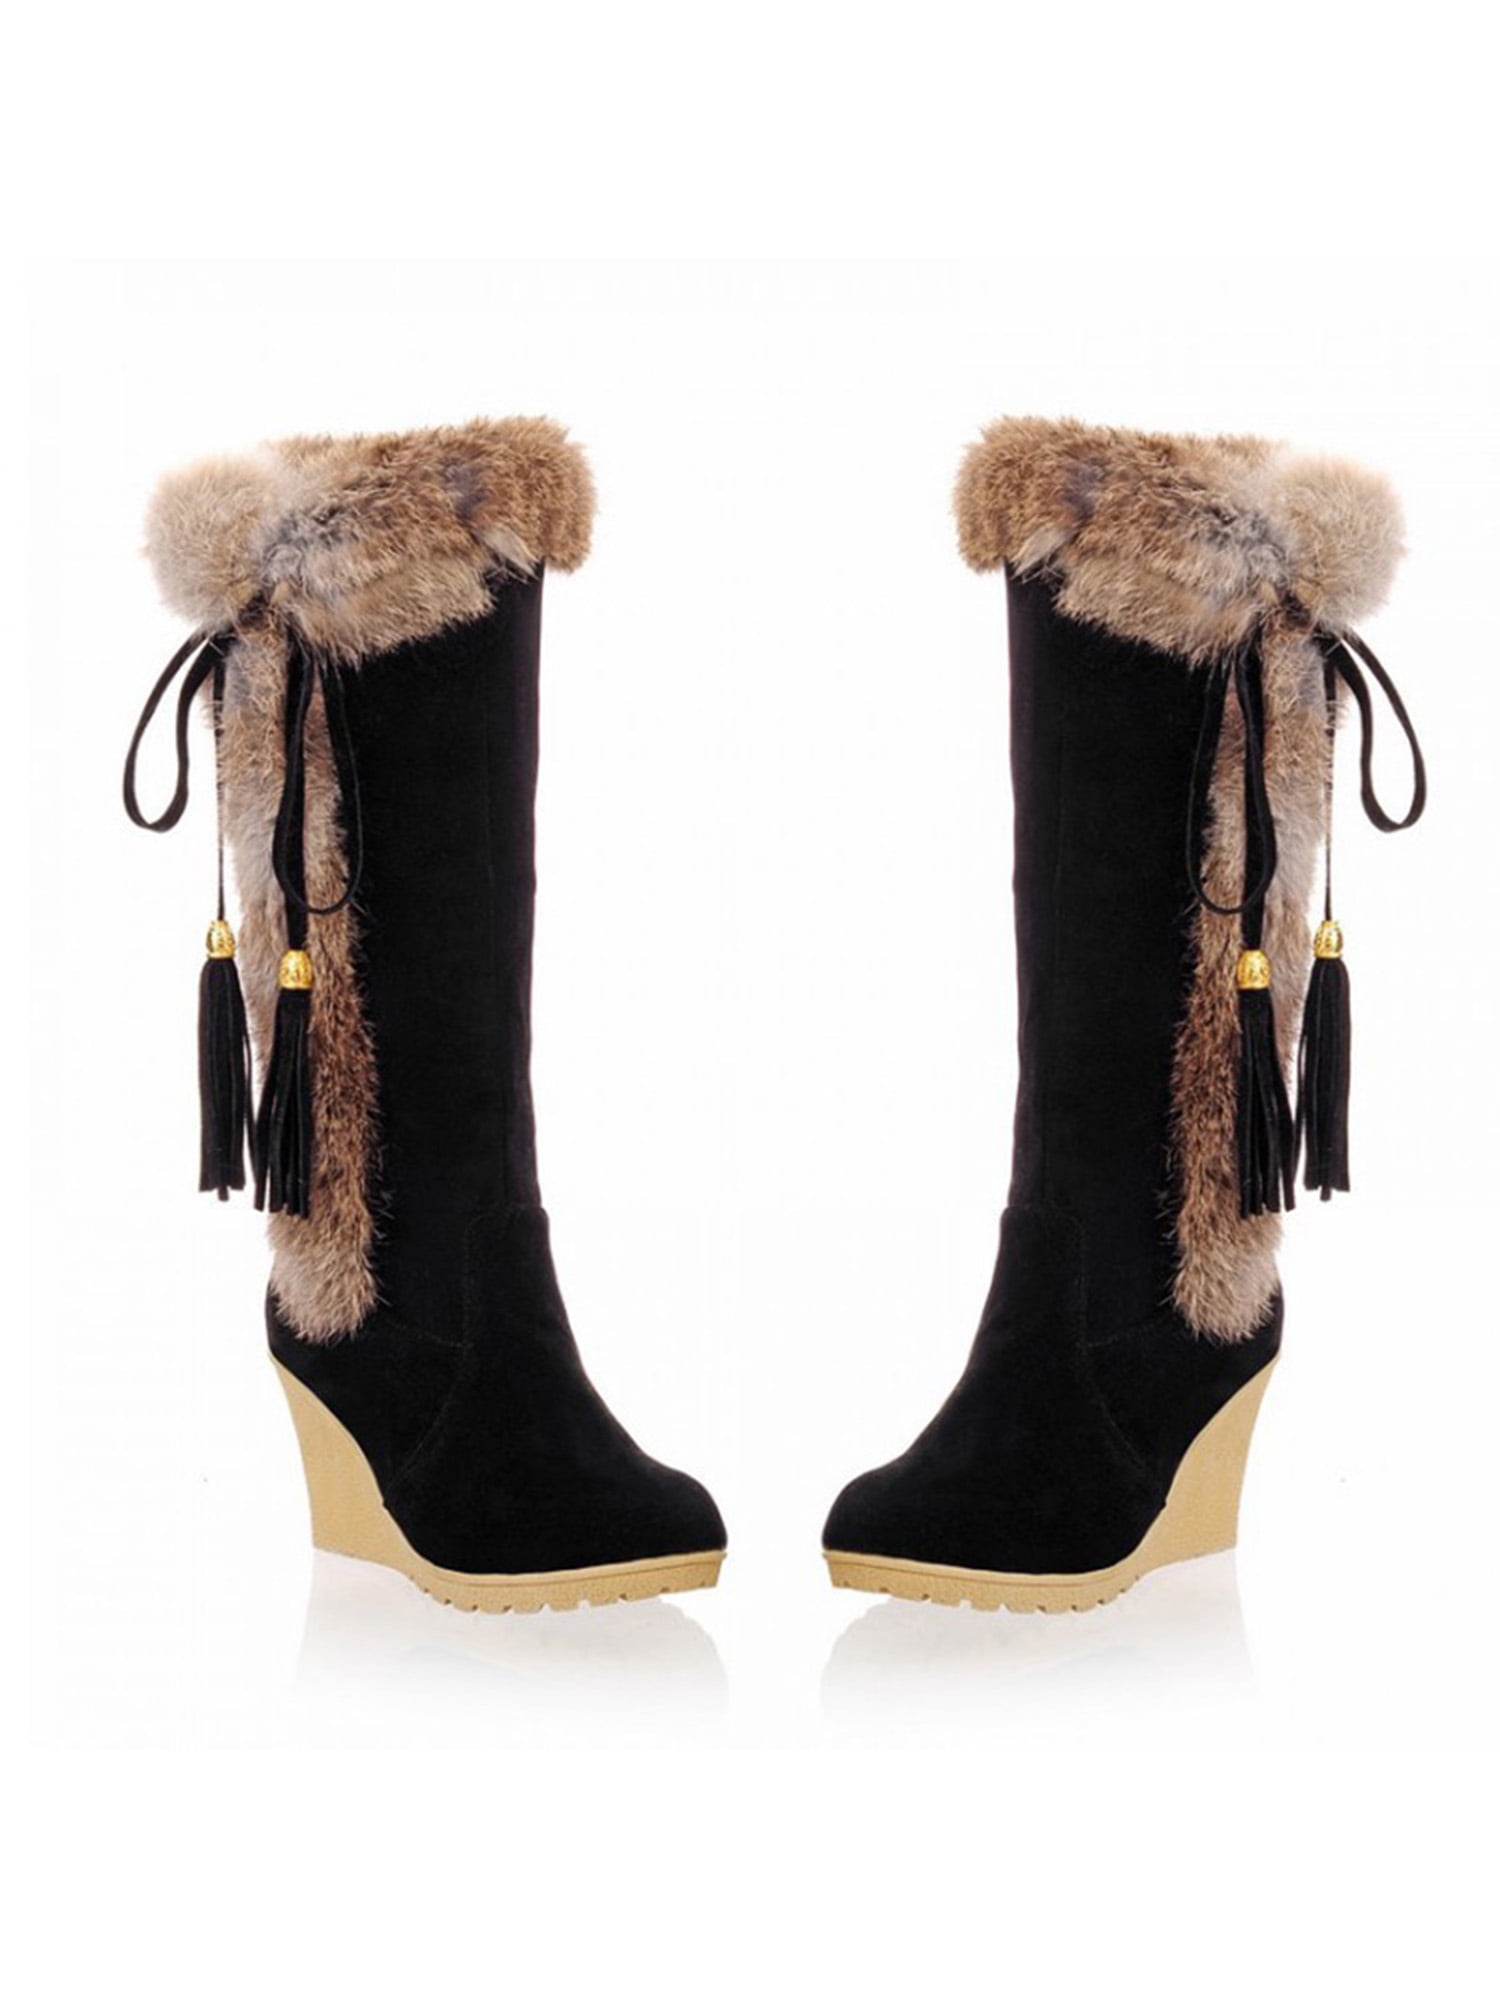 UKAP Women's Faux Fur Lined Wedge Heel Slip On Winter Warm Soft